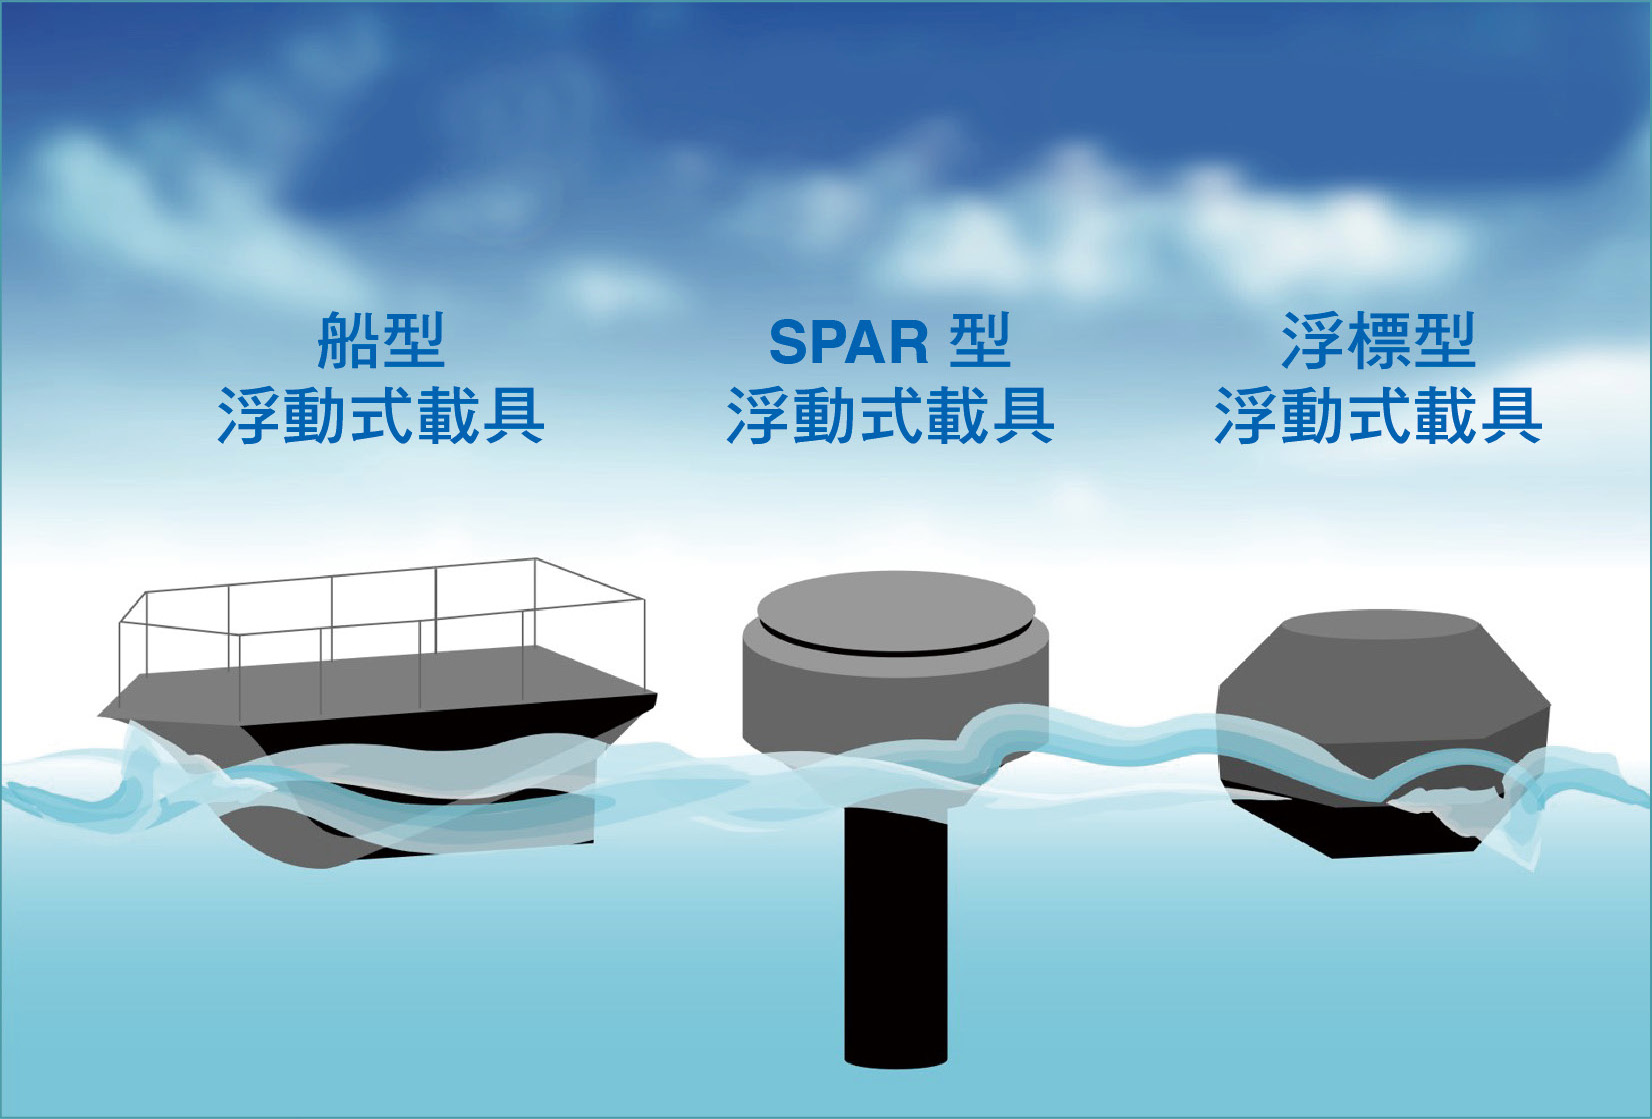 目前常見的浮動式光達載體有3種，分別是船型浮動式載具、SPAR型浮動式載具，以及浮標型浮動式載具。